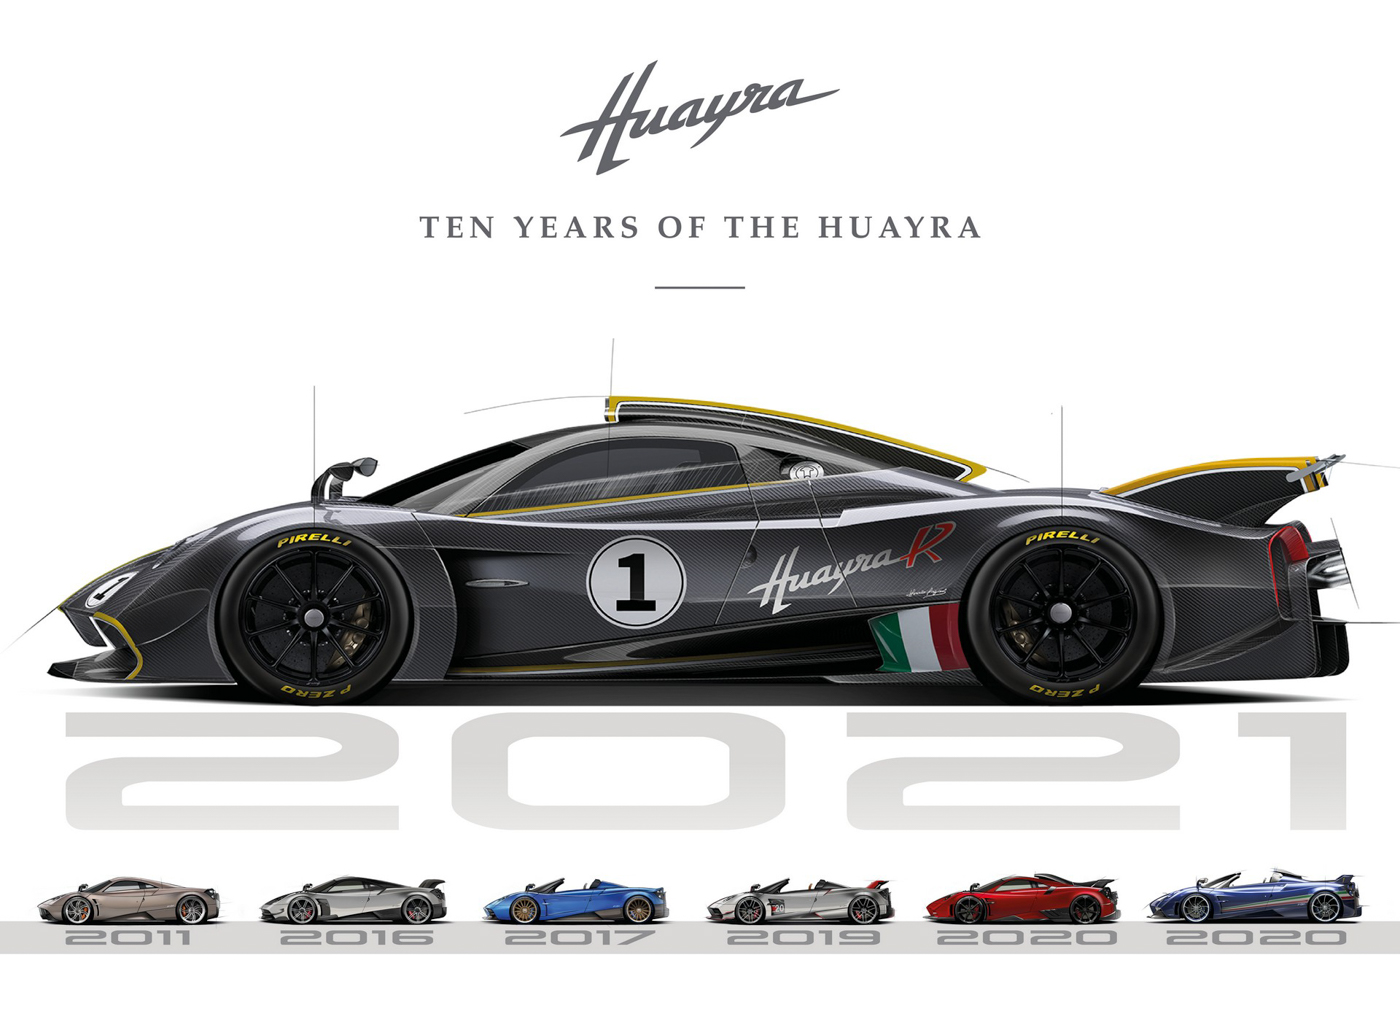 Pagani-kỷ-niệm-sinh-nhật-thứ-10-của-Huayra-tại-Monterey-Car-Week (9).jpg